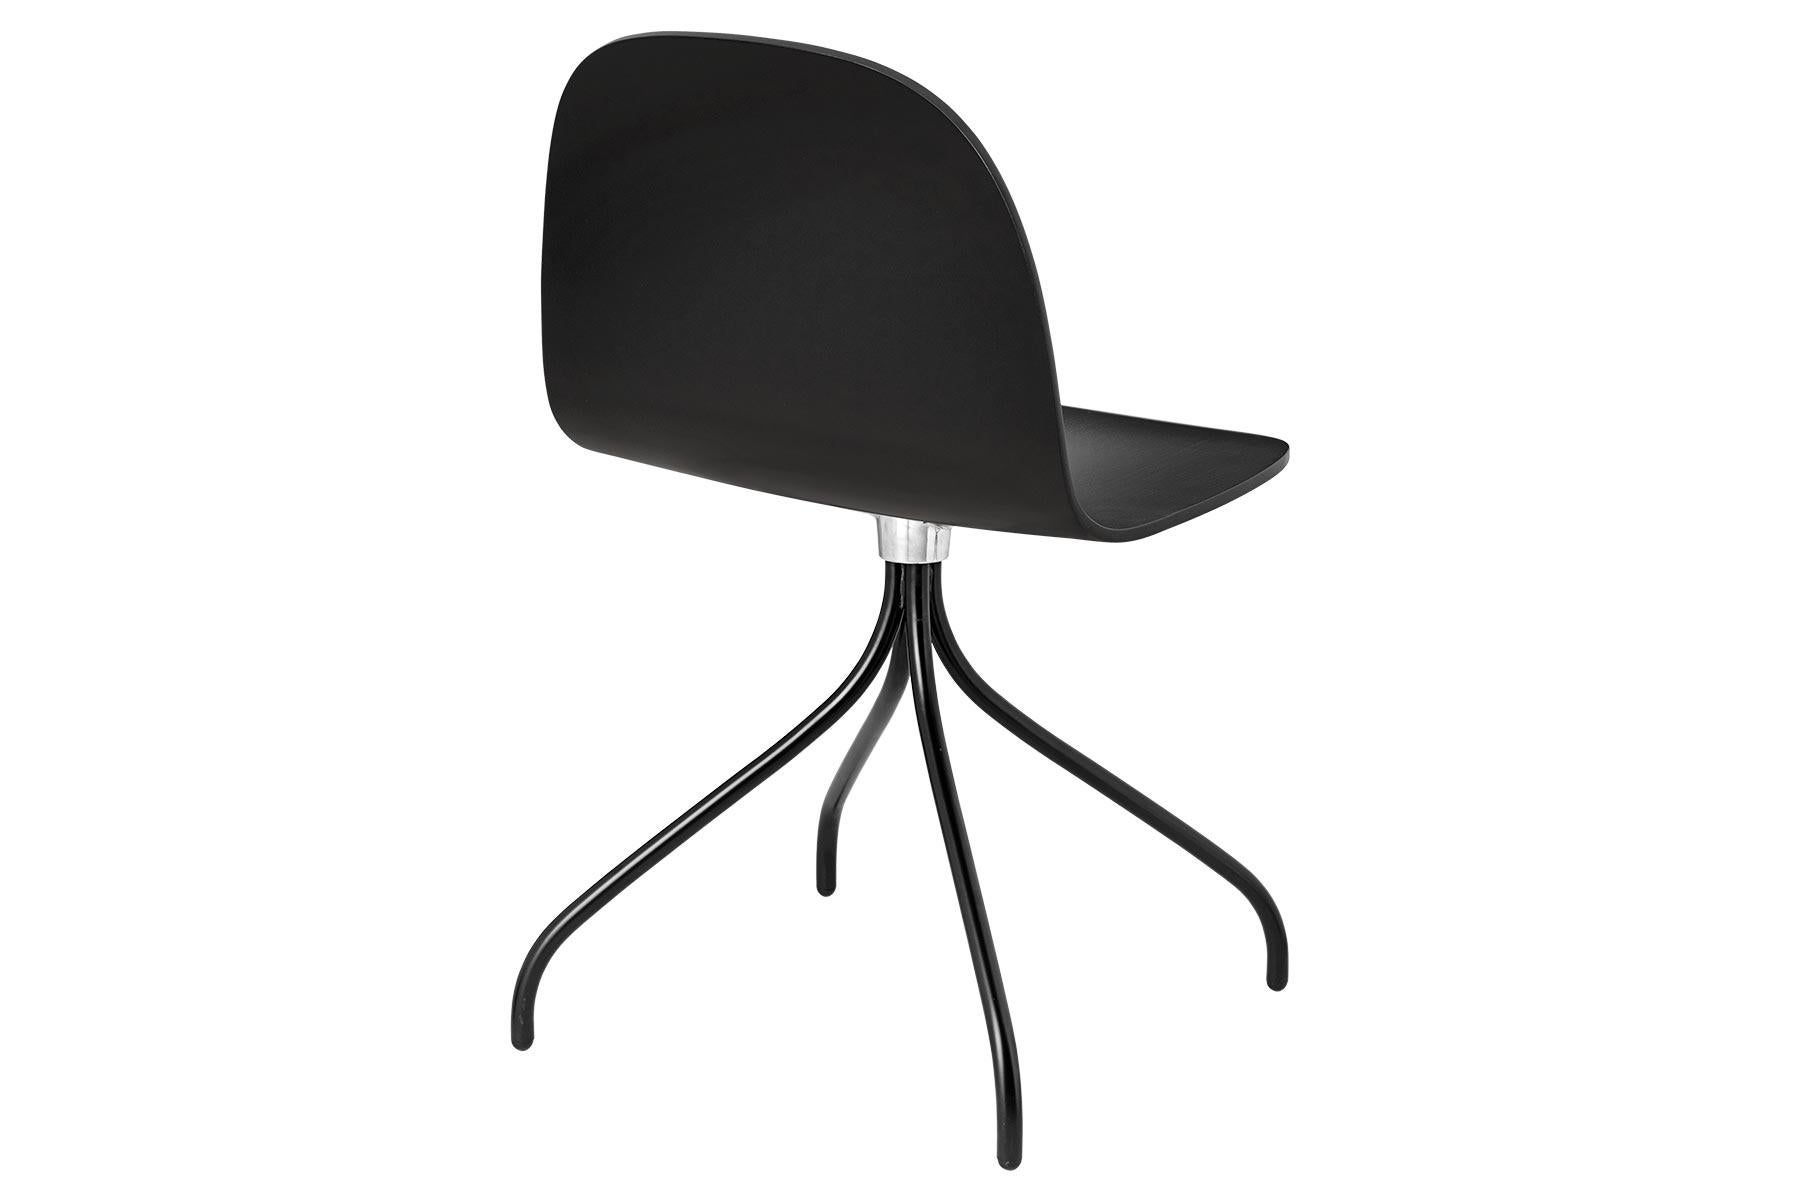 Der Gubi 2D Stuhl ist eine Serie von leichten Esszimmerstühlen aus laminiertem Furnier mit einem breiten Anwendungsspektrum in privaten und öffentlichen Räumen. Er ist eine Erweiterung des klassischen Gubi 3D-Stuhls und zeichnet sich durch einen